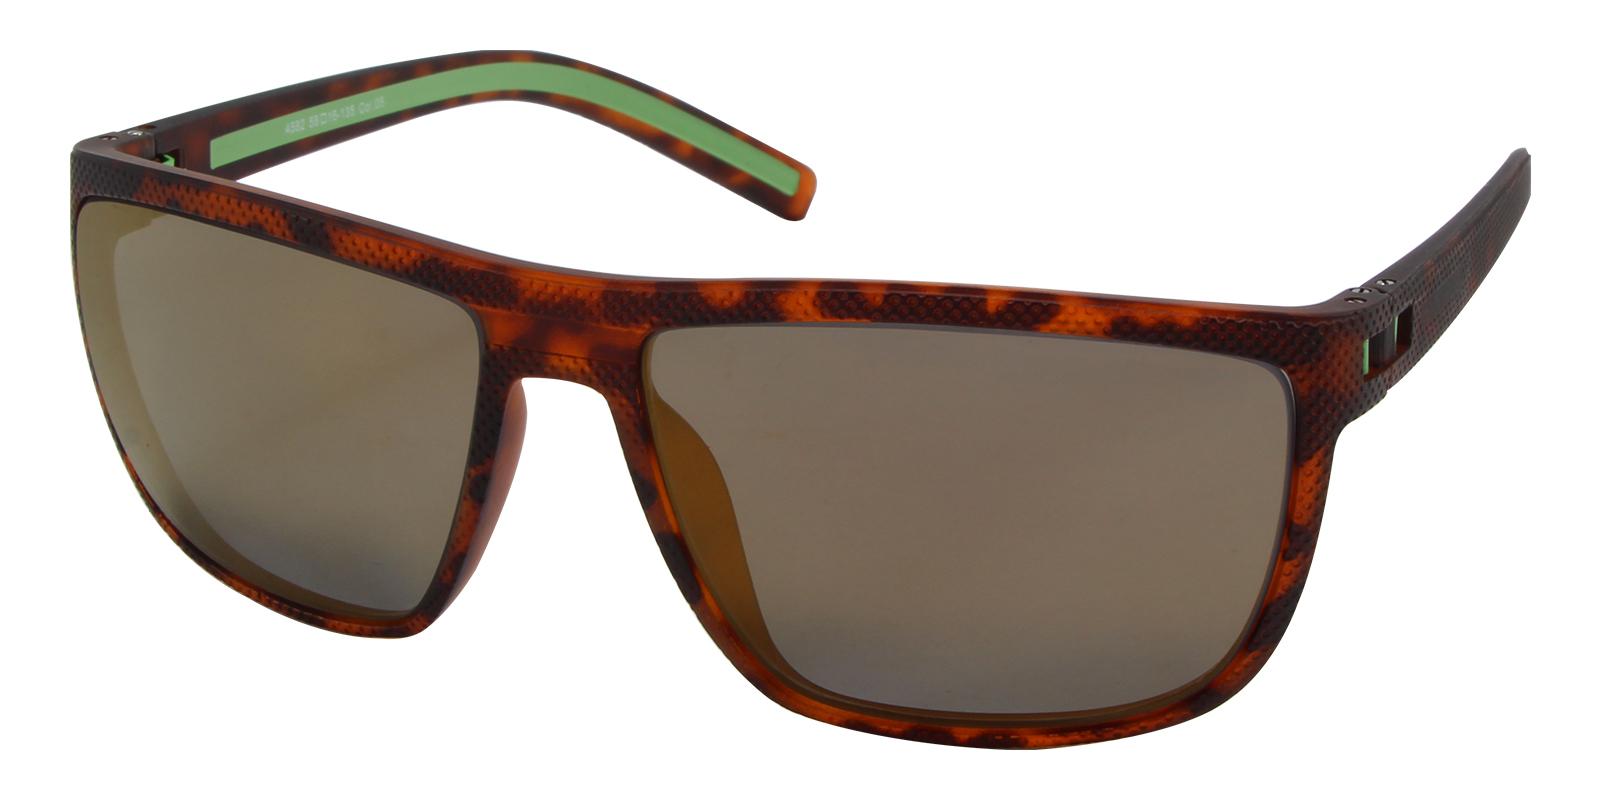 Tropic Tortoise TR SpringHinges , Sunglasses , UniversalBridgeFit Frames from ABBE Glasses